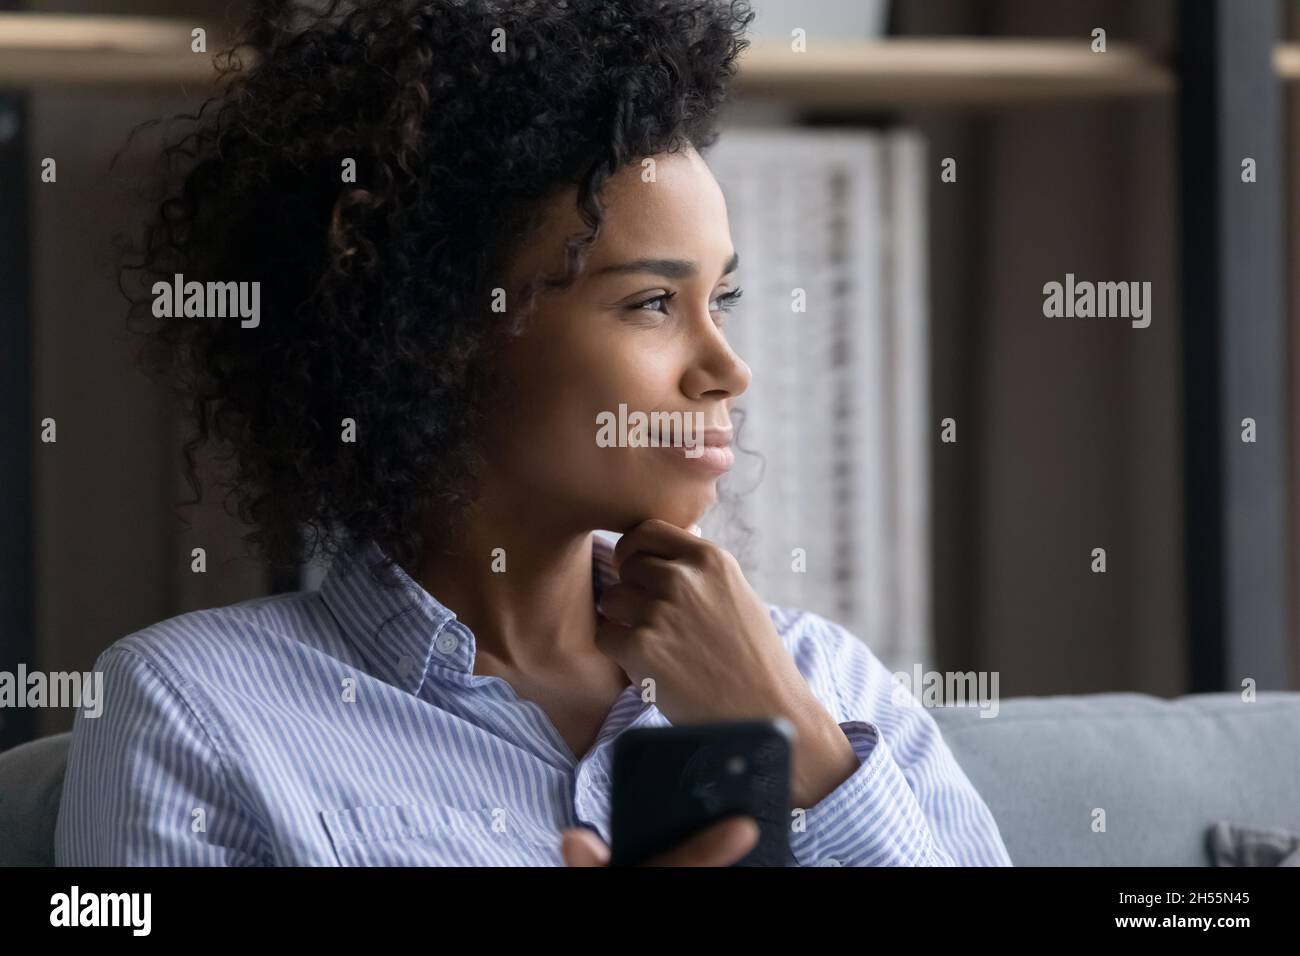 Gros plan femme afro-américaine rêveuse souriante tenant un smartphone Banque D'Images